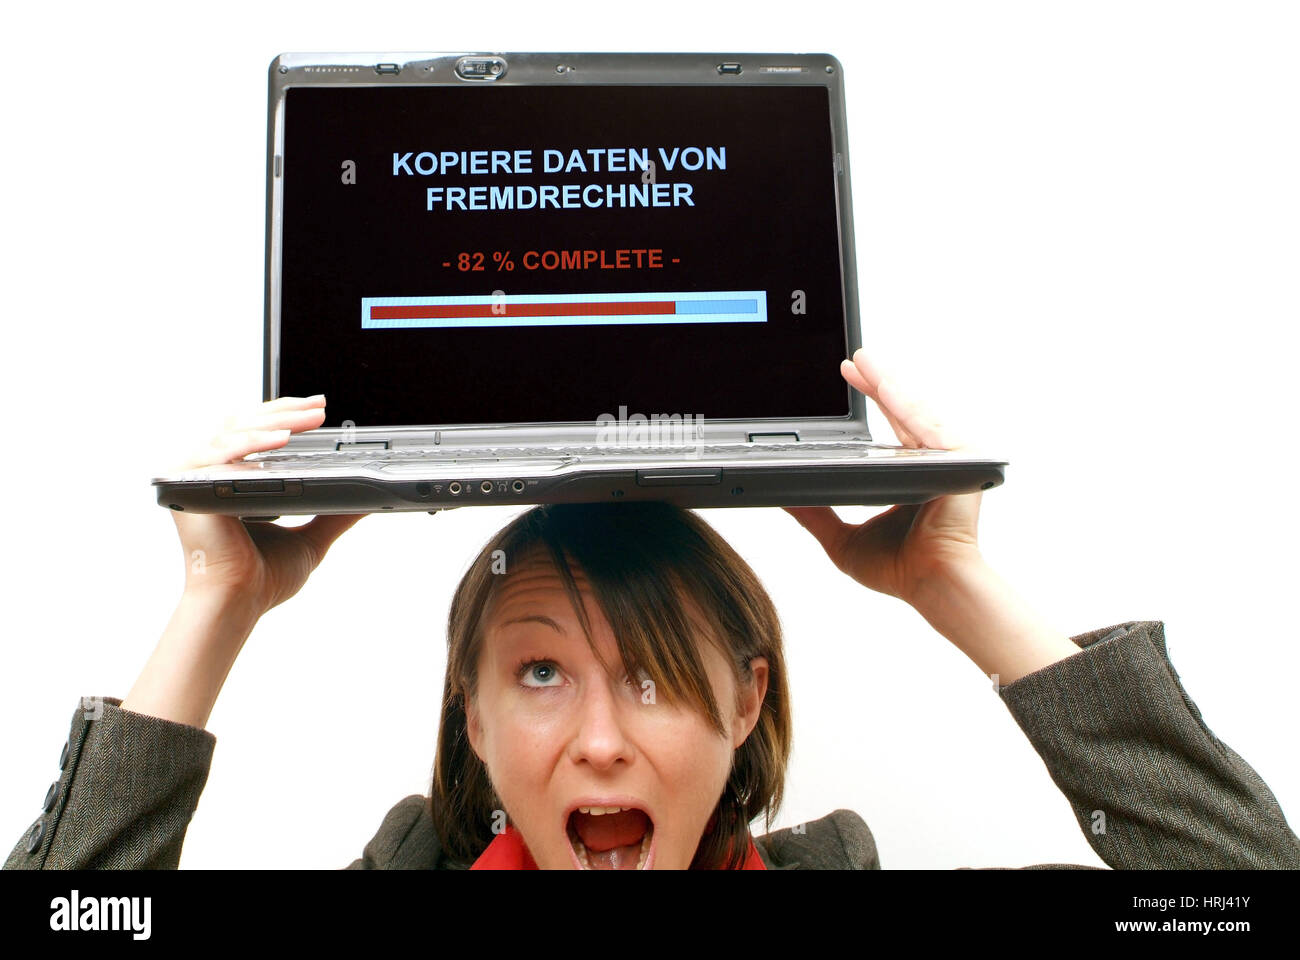 Gesch?ftsfrau mit Laptop am Kopf, Symbolbild Kopiere Daten von Fremdrechner, Datenklau - business woman with laptop on head, symbolic for data steal Stock Photo